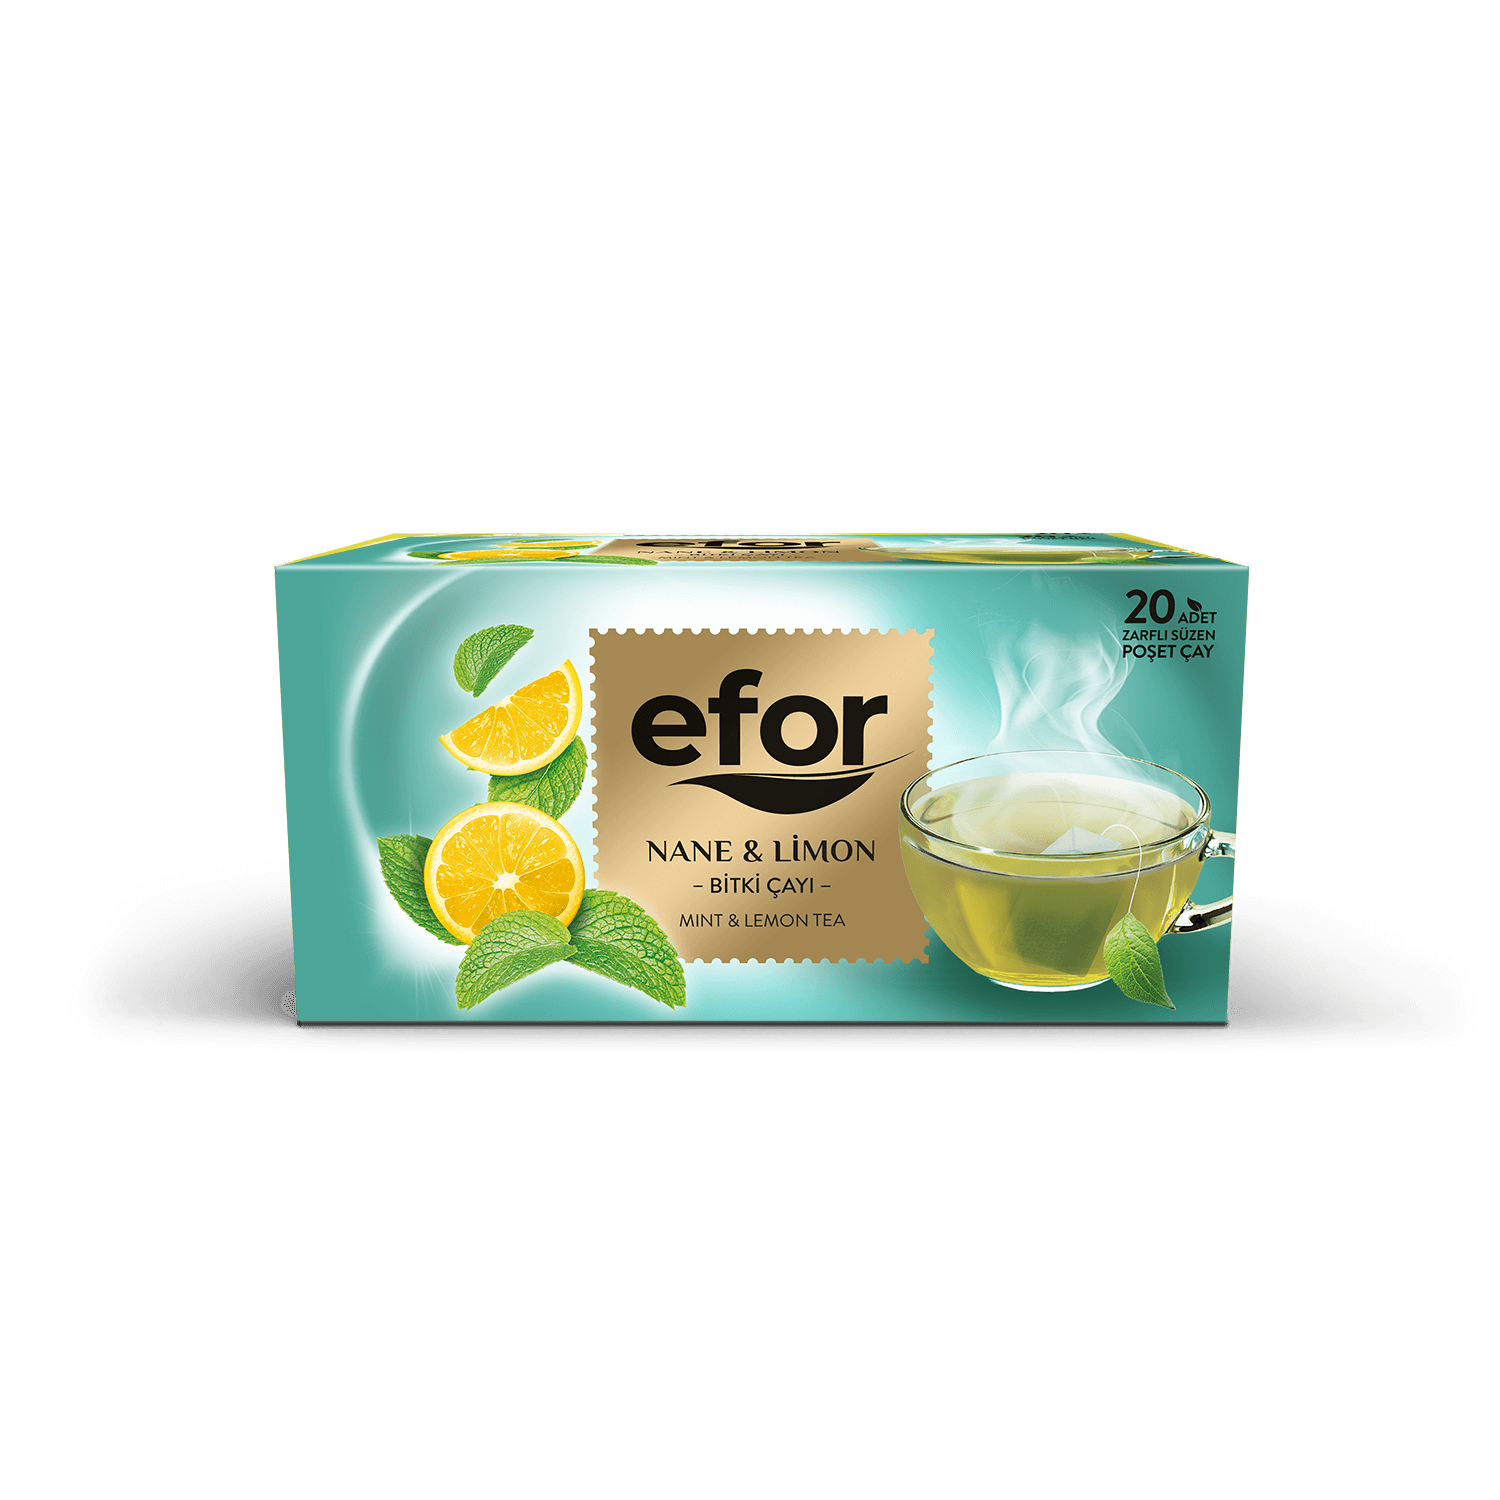 Efor Mint & Lemon Tea